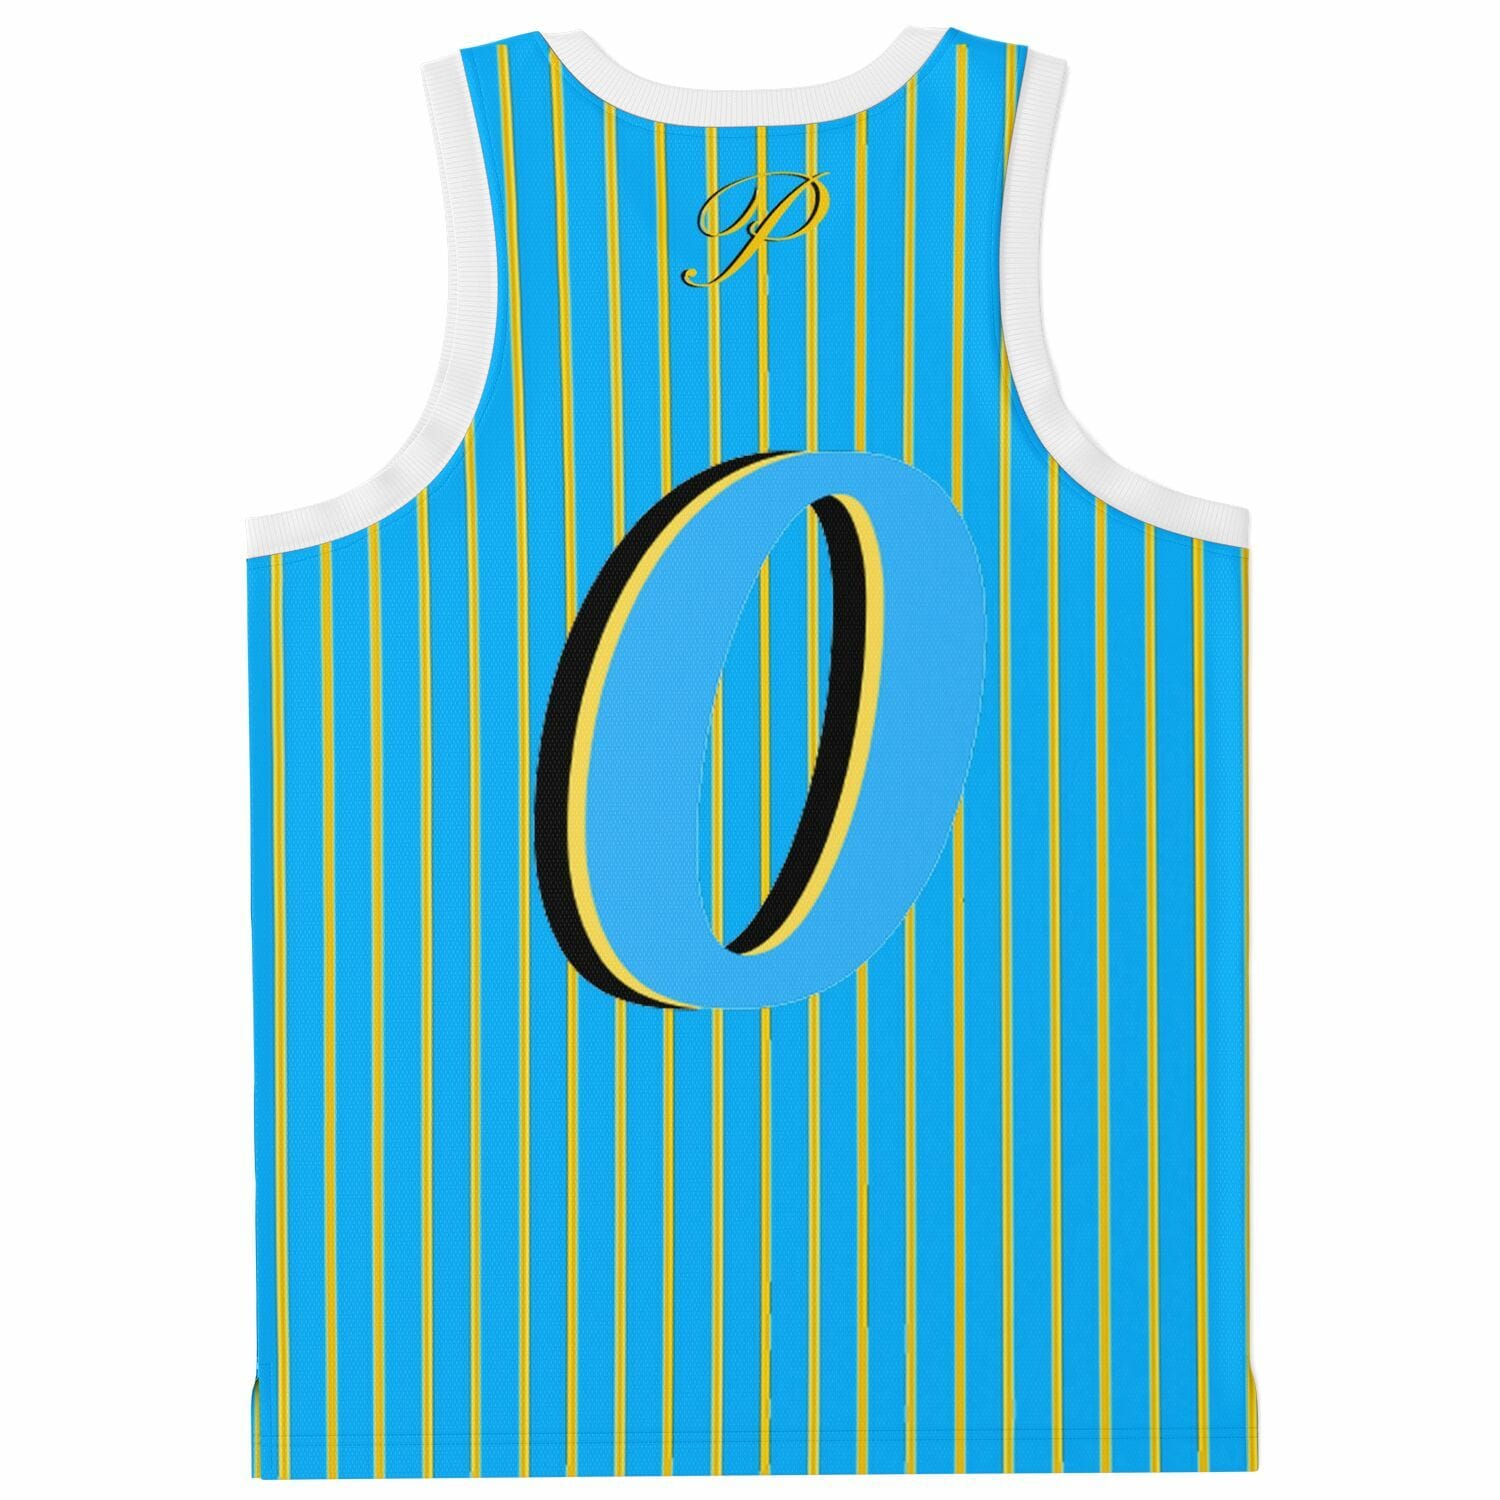 Basketball Jersey Rib - AOP Venice court phenomenon jersey